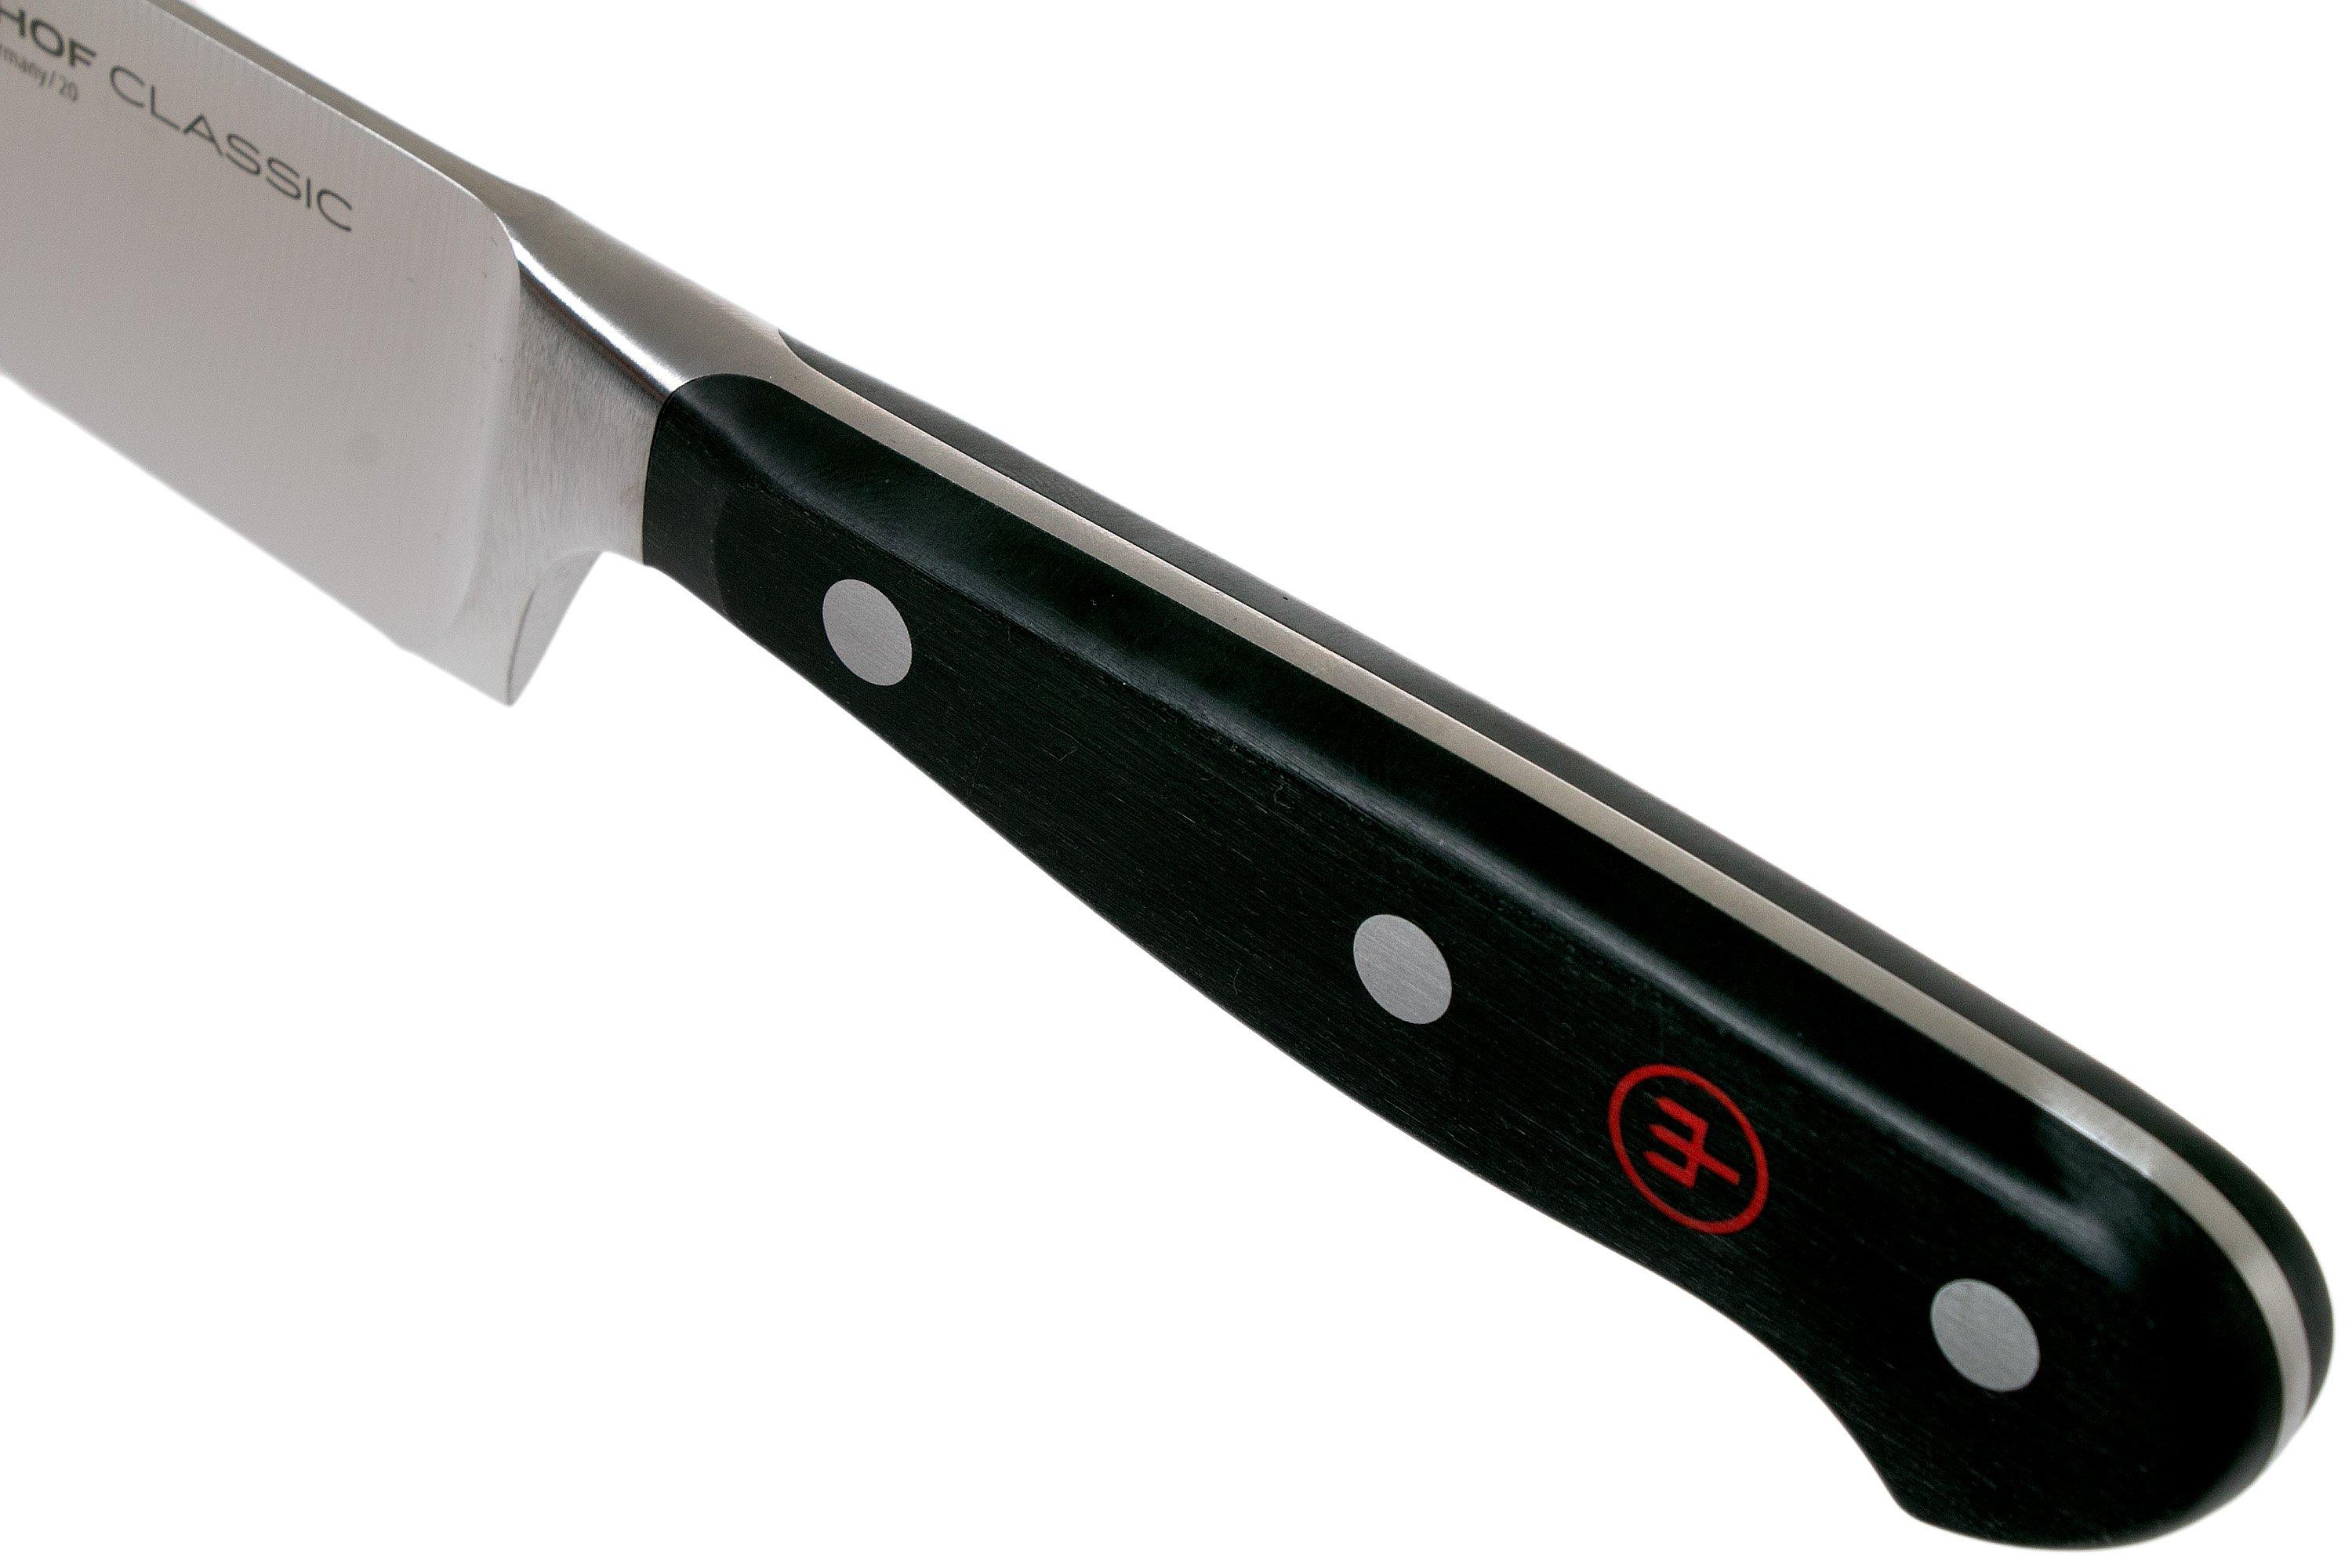 Couteau à saucisson 14 cm Classic blanc - Wüsthof